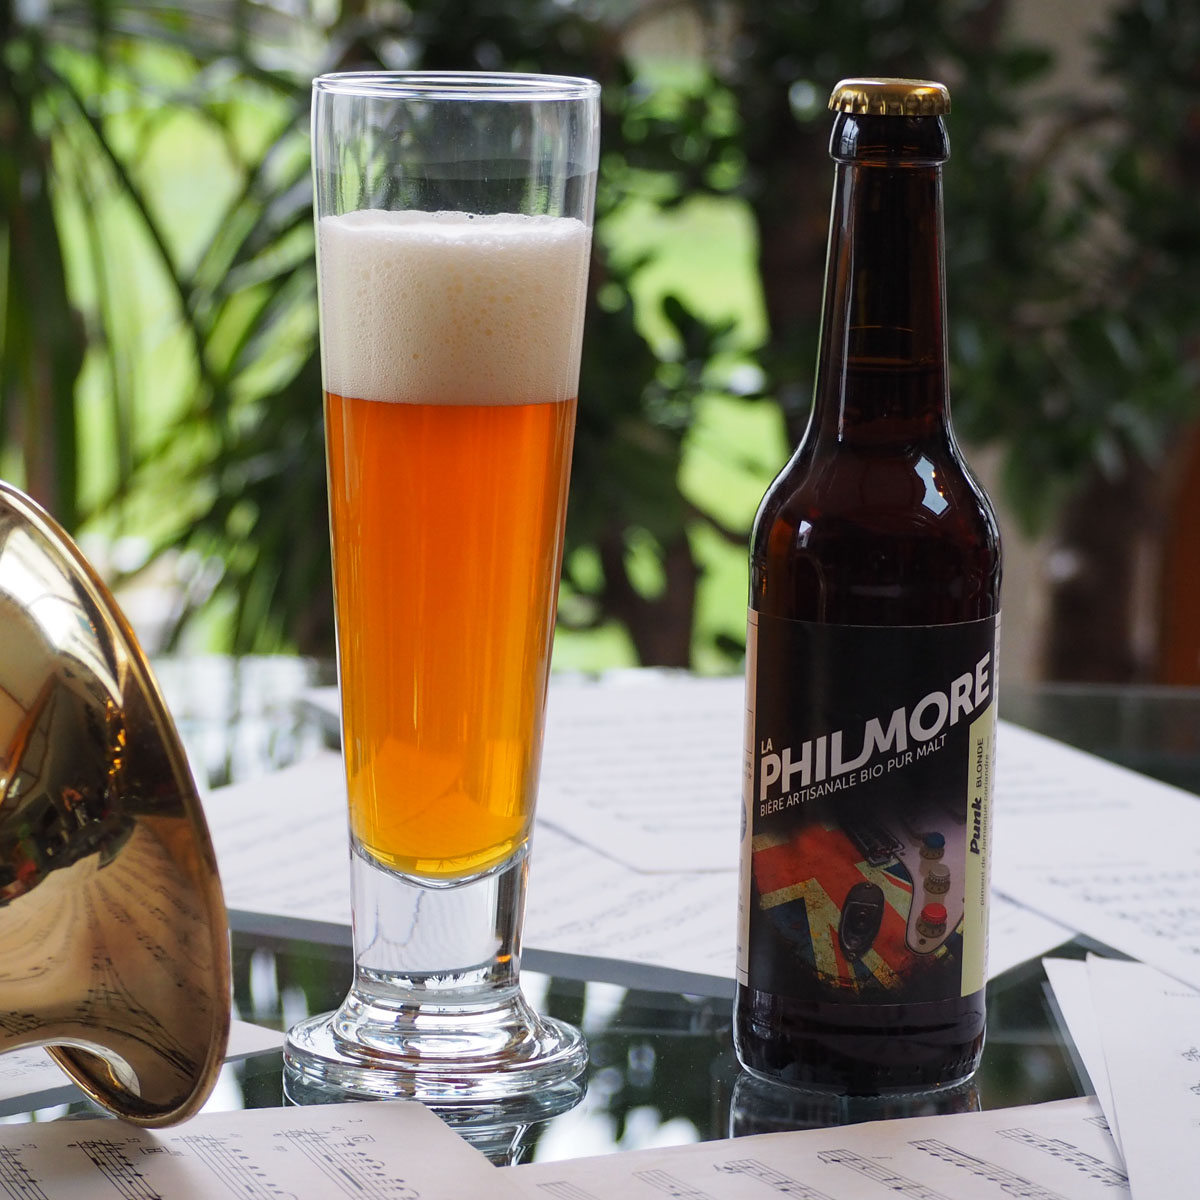 La Philmore Punk – bière artisanale bio pur malt